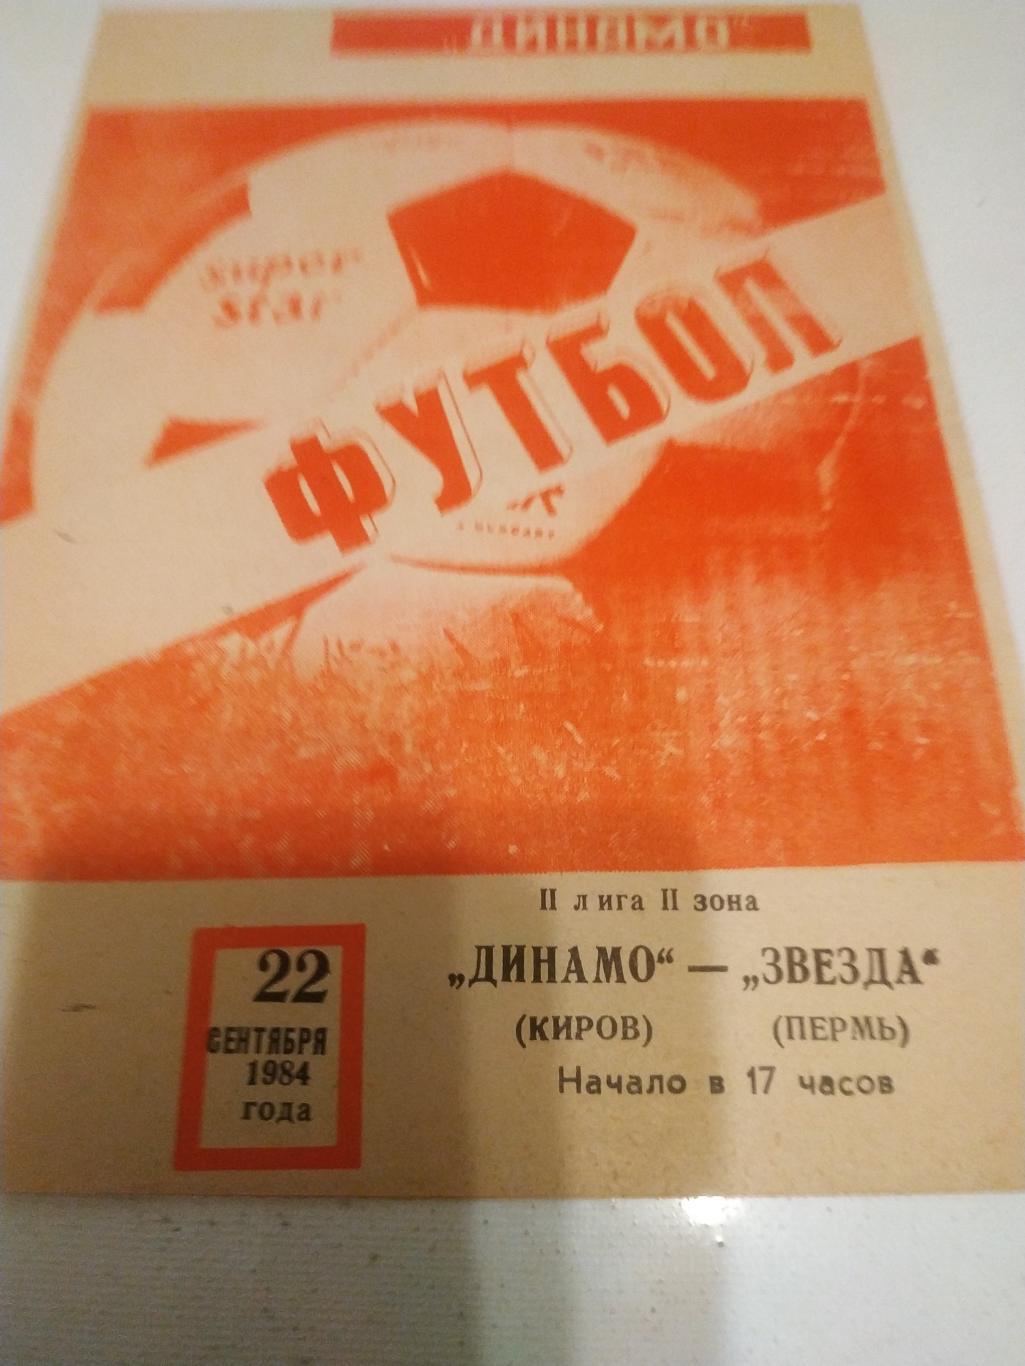 Динамо Киров - Звезда Пермь 1984